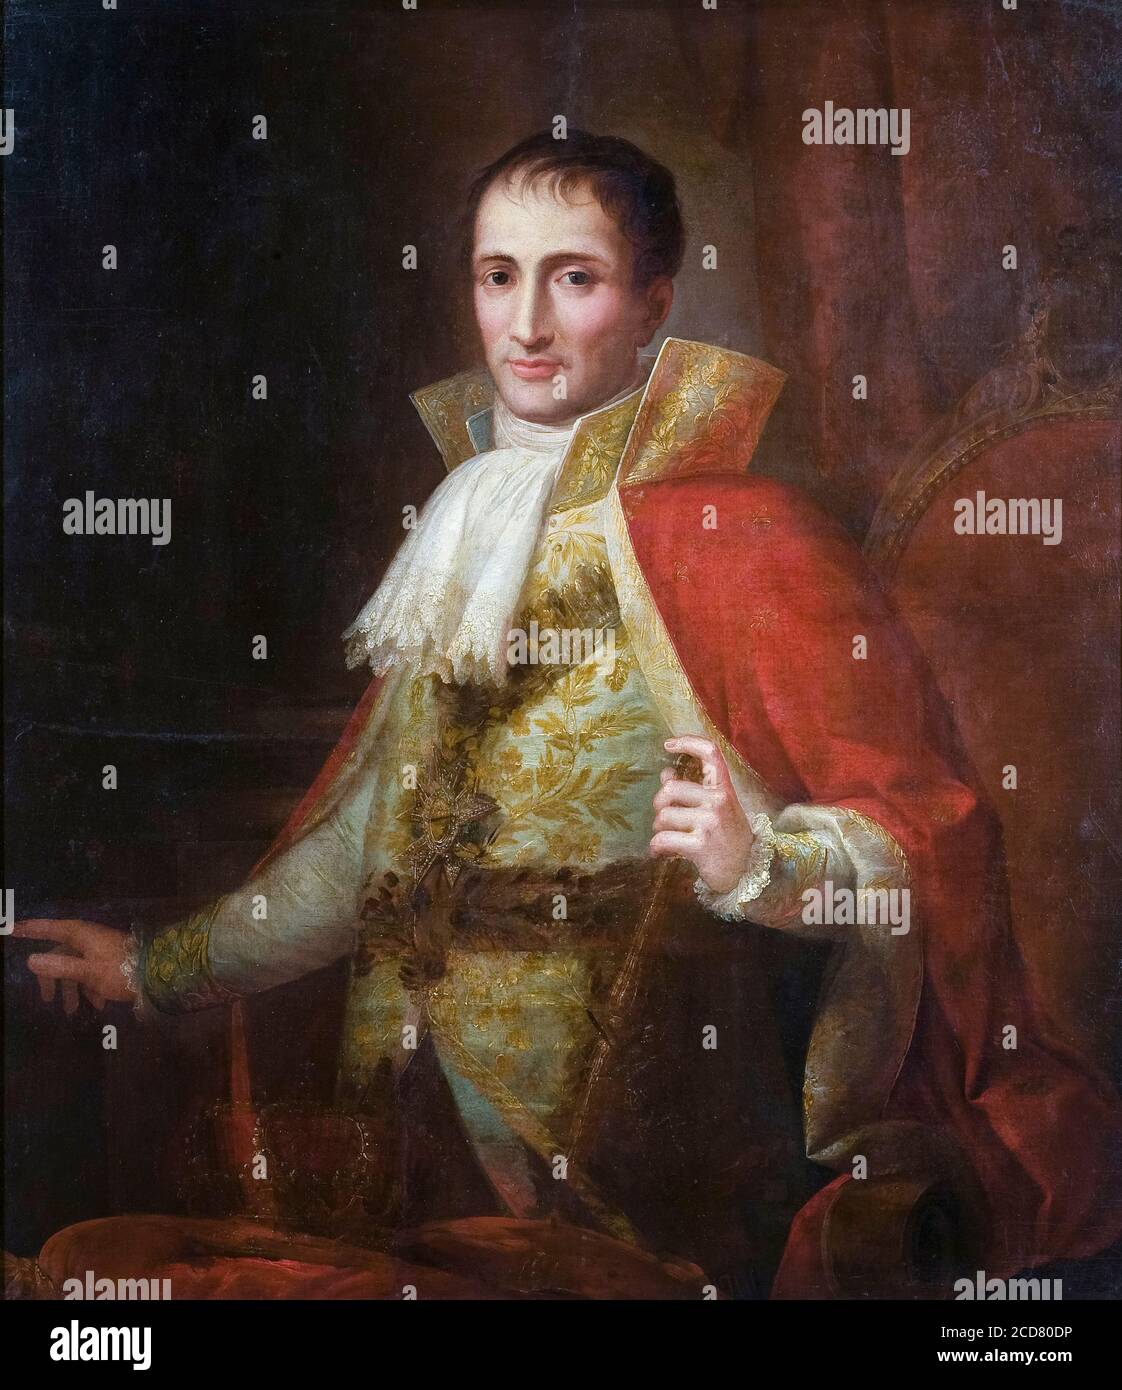 King Joseph I of Spain (1768-1844), (Joseph-Napoléon Bonaparte, Comte de Survilliers), portrait painting by José Flaugier, circa 1809 Stock Photo